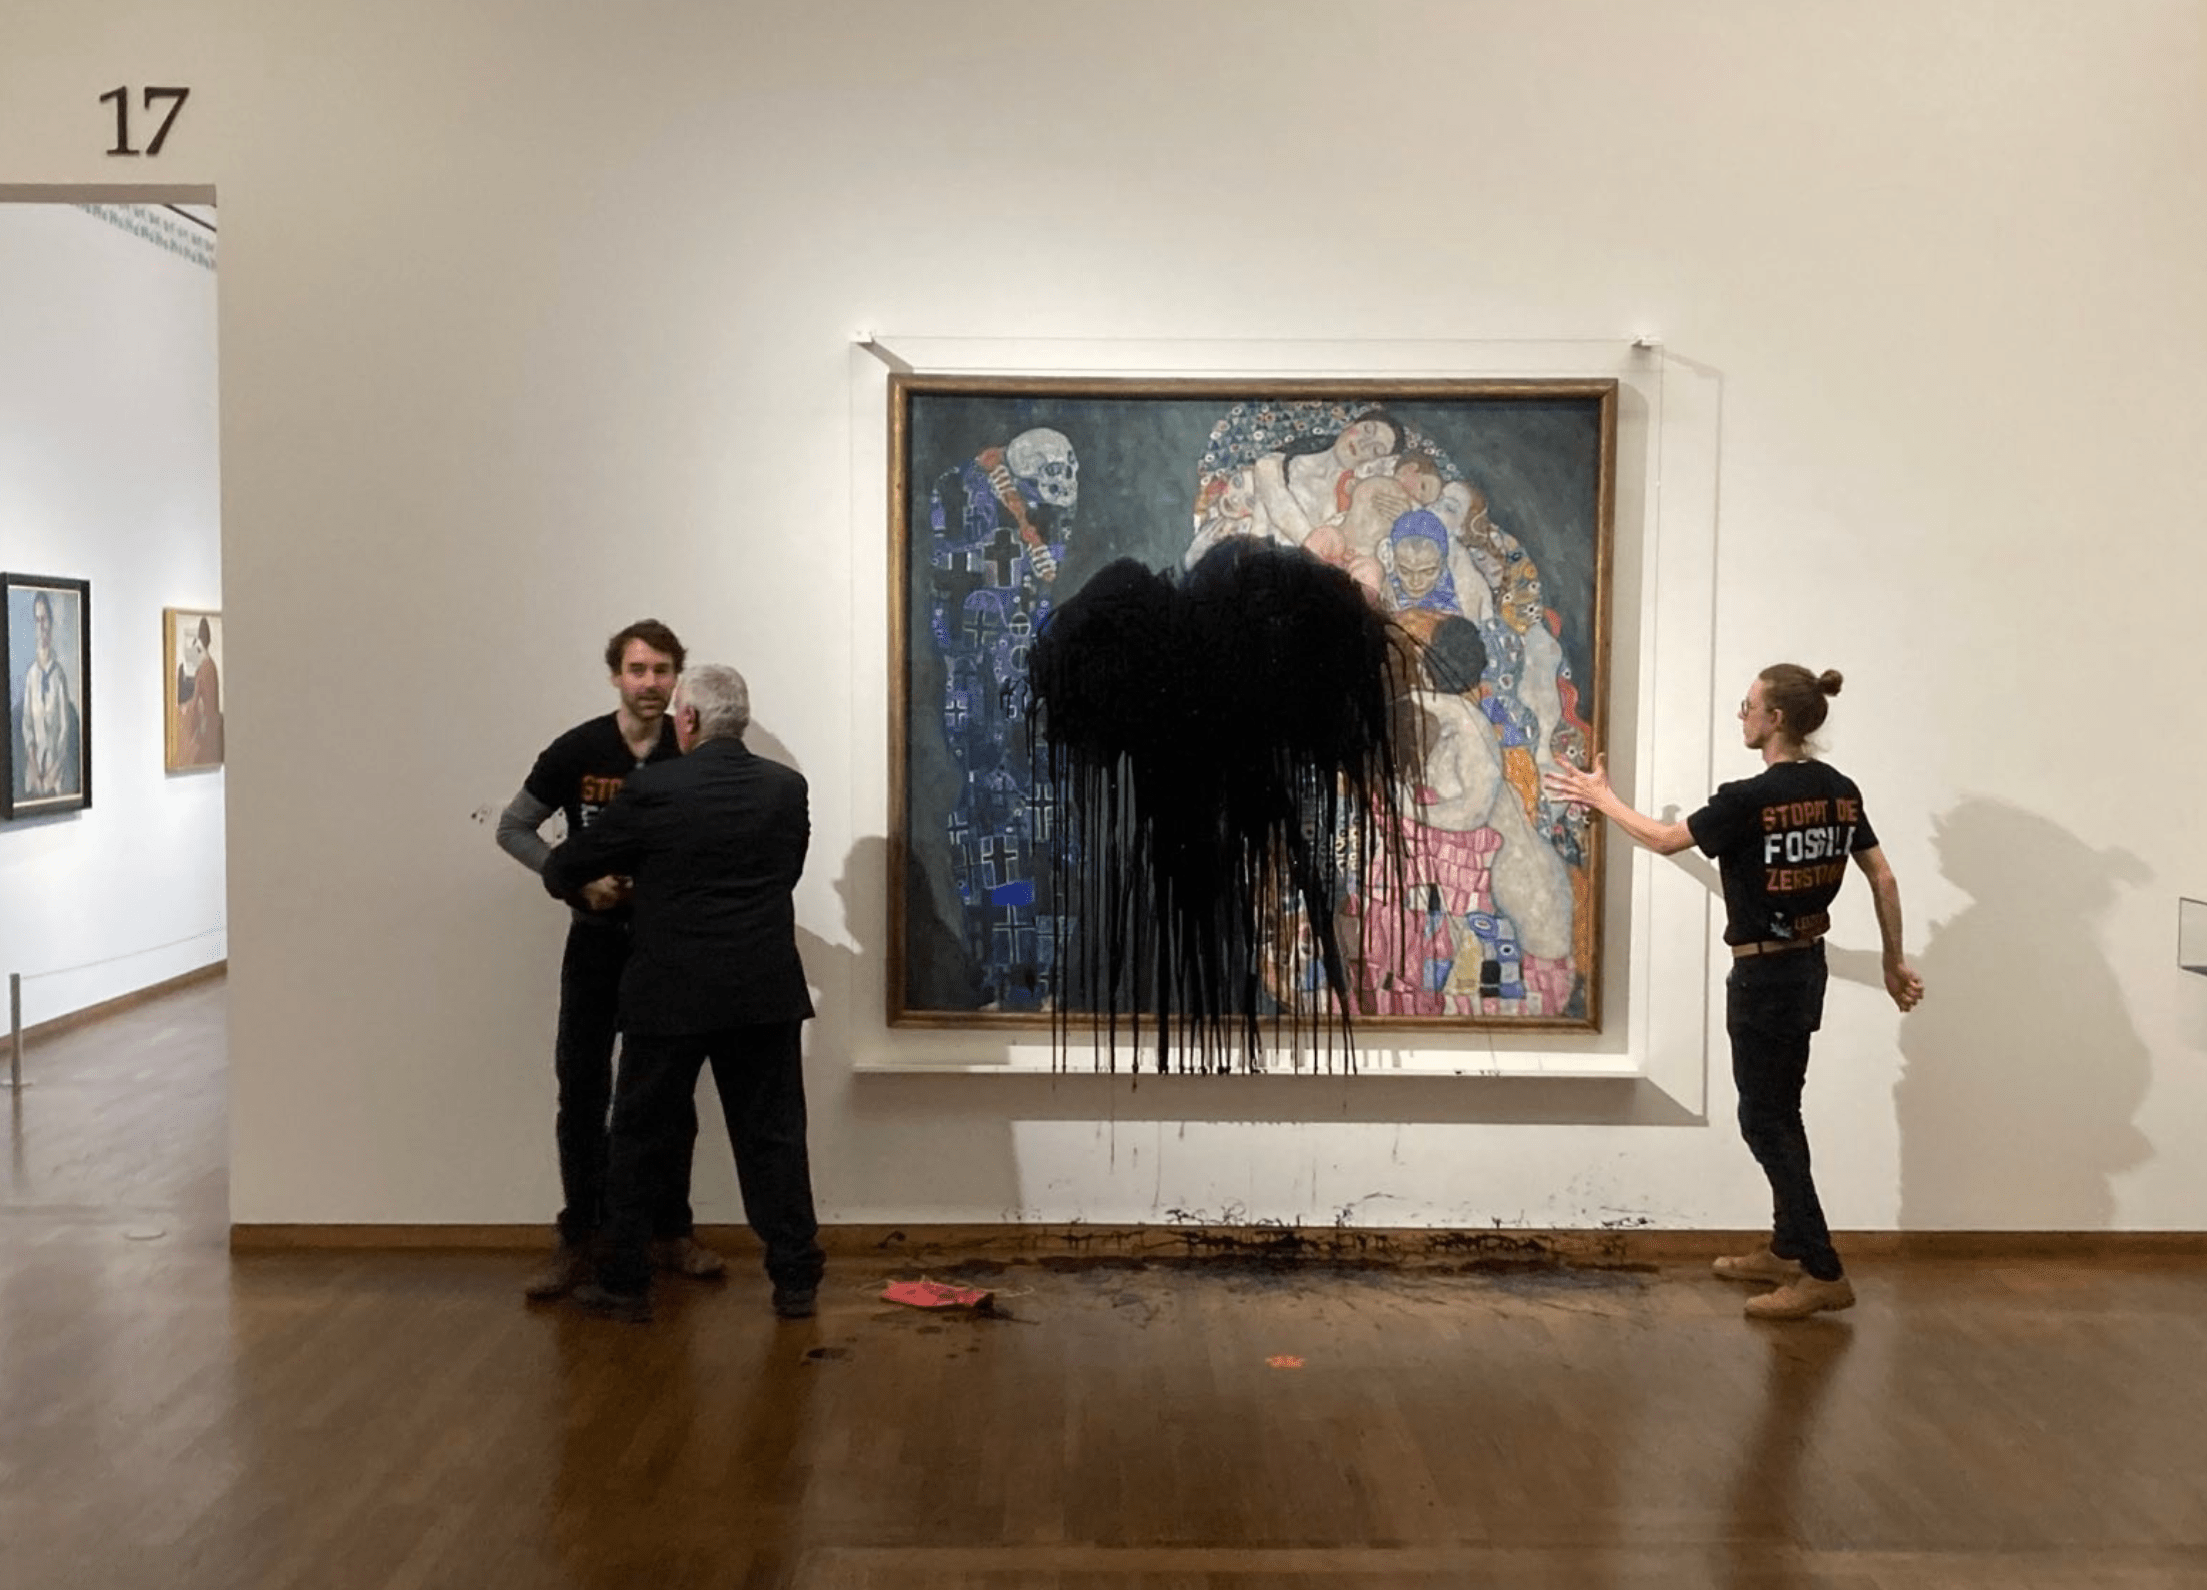 Картина «Смерть и жизнь» Климта подверглась нападению экоактивистов